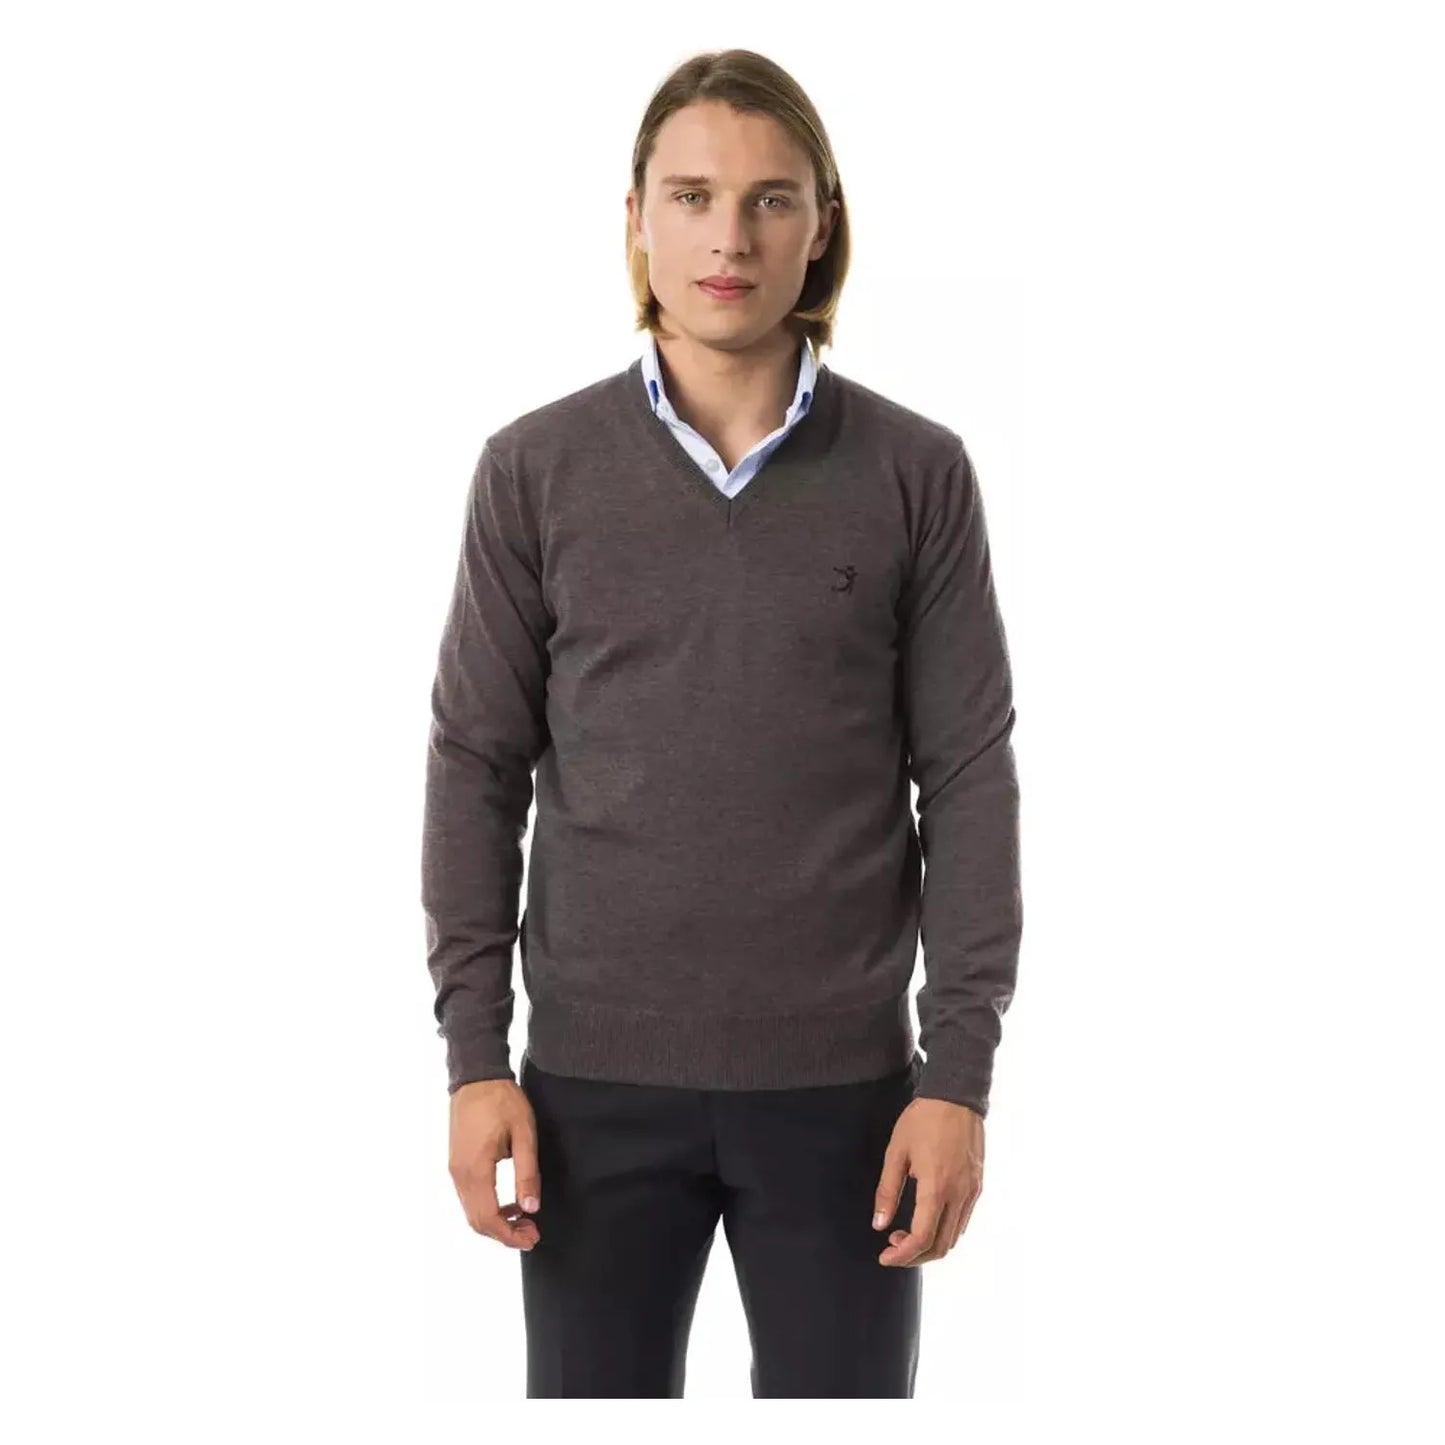 Uominitaliani Exquisite V-Neck Embroidered Merino Sweater noce-sweater stock_product_image_17056_883774925-22-129da5e1-770.webp